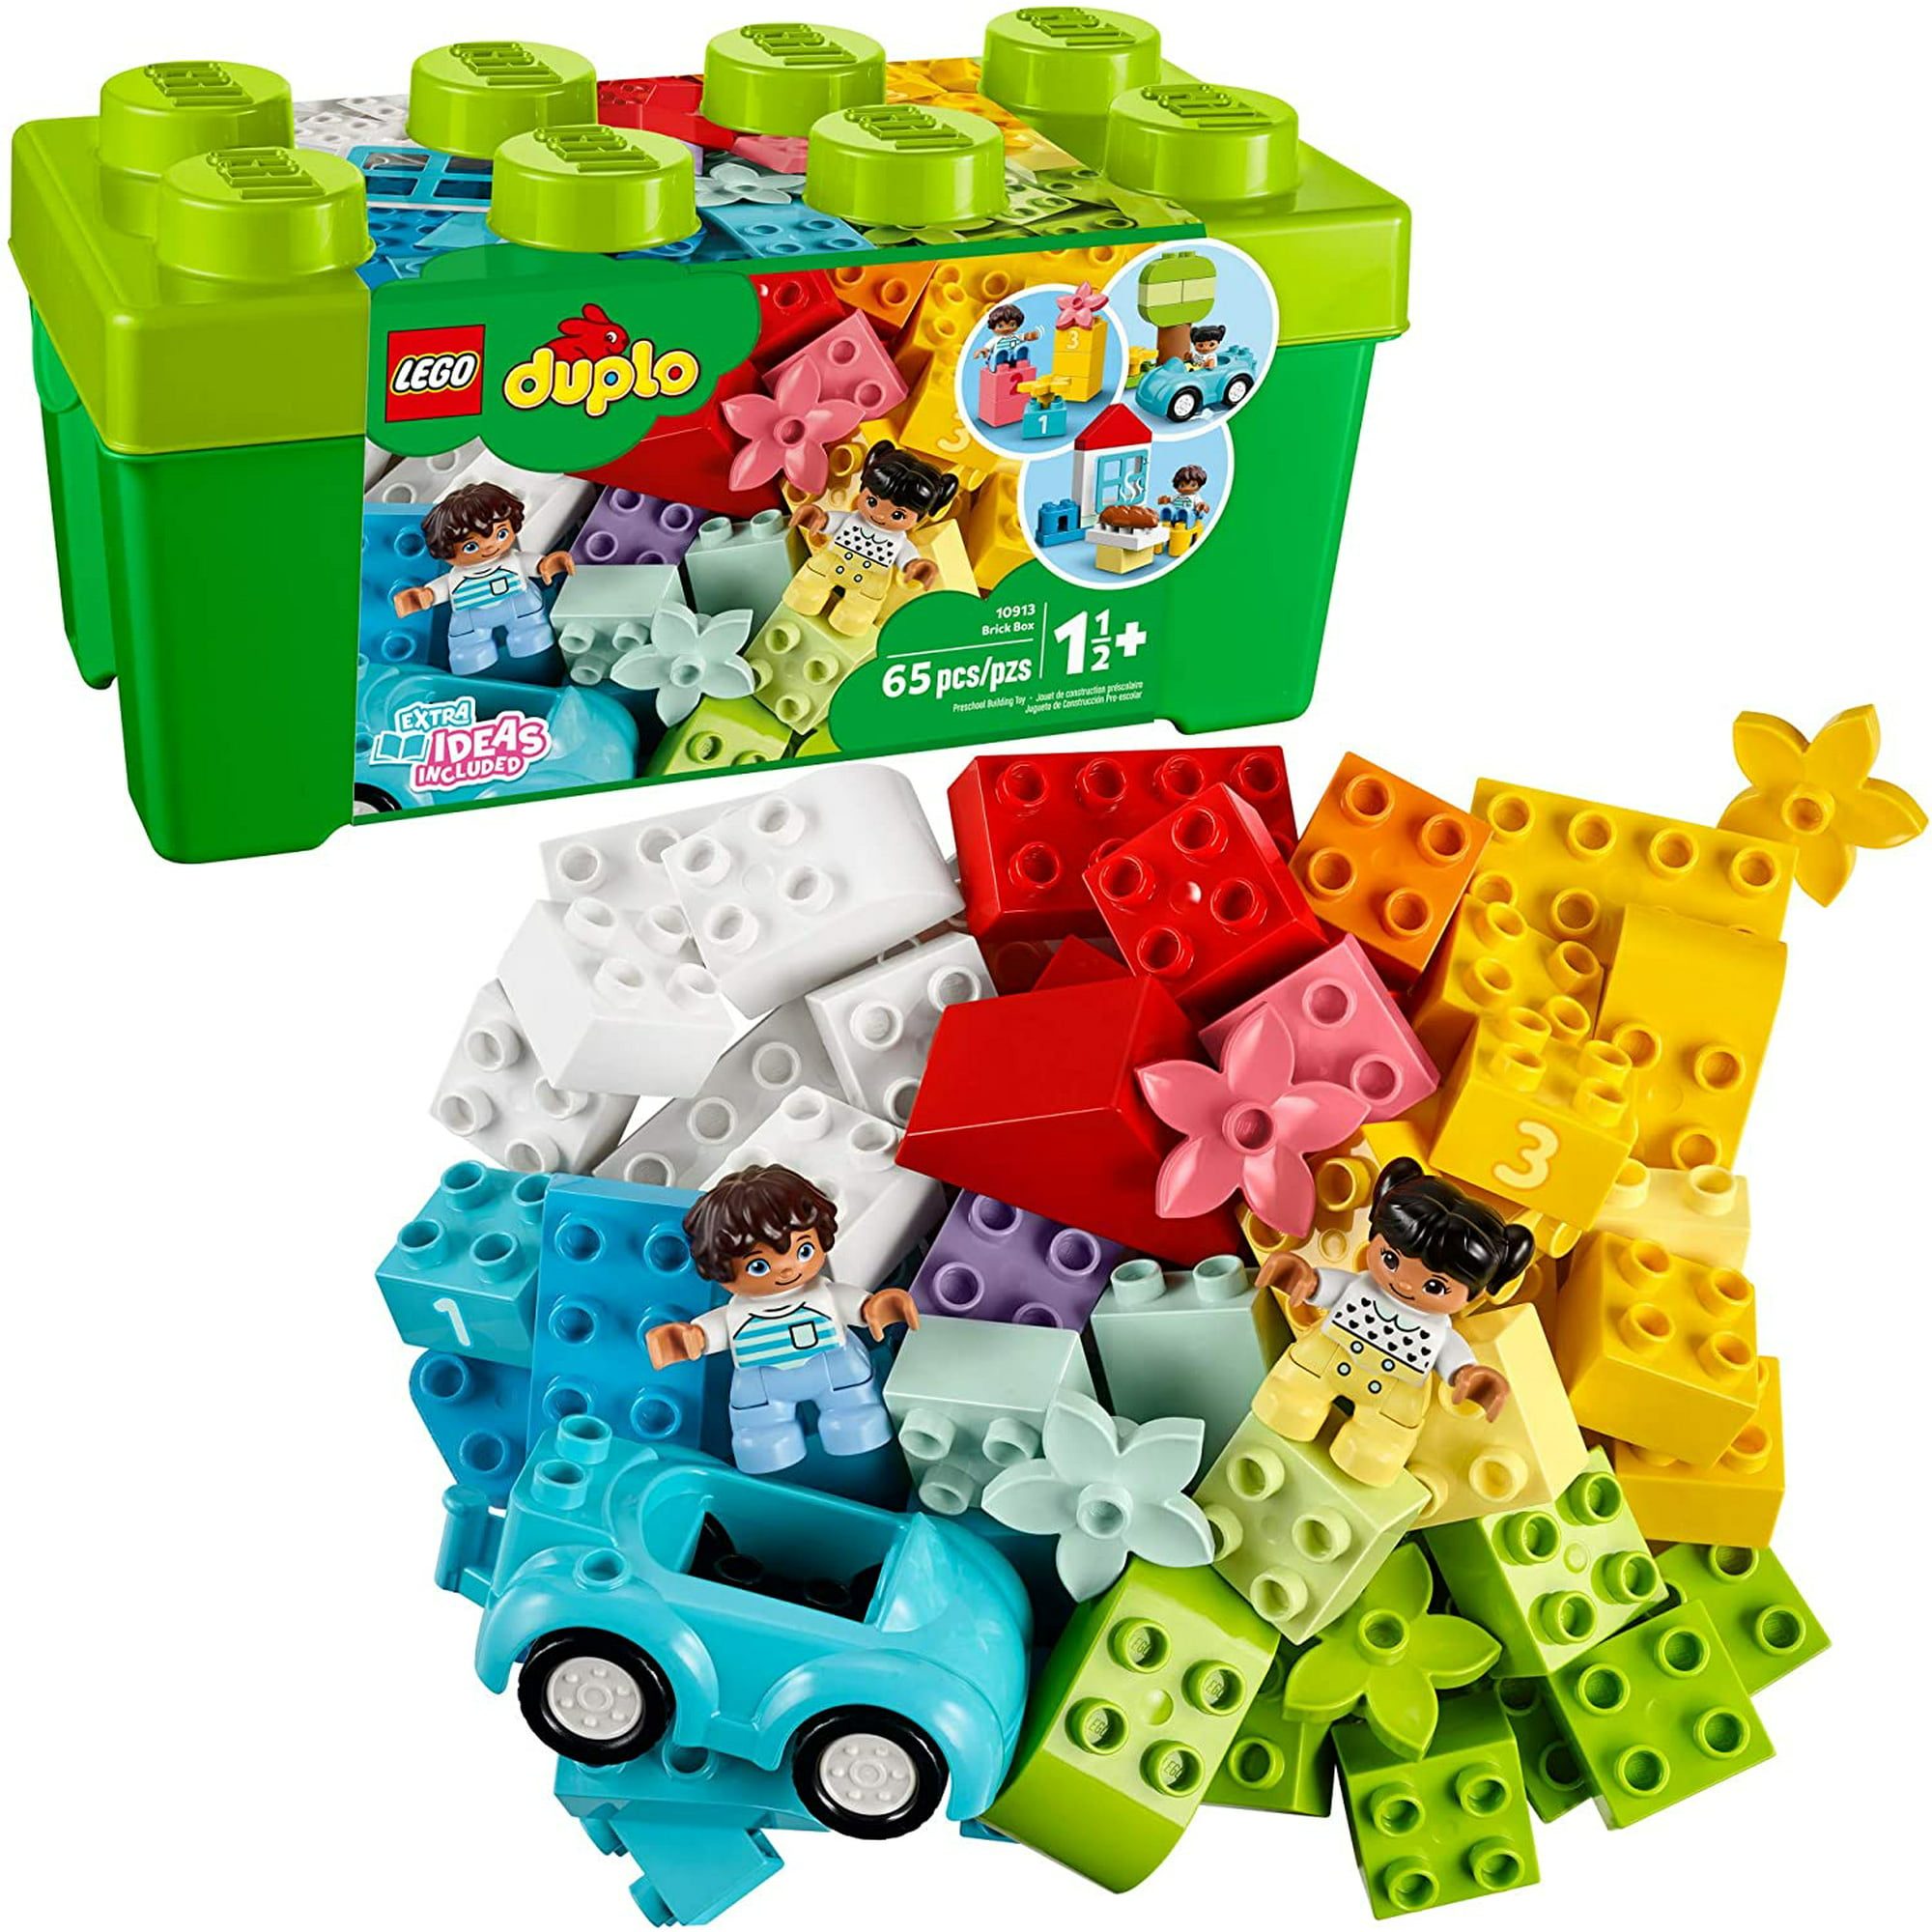 LEGO Duplo - Caja de Ladrillos Deluxe 10914, Duplo Piezas y Planchas